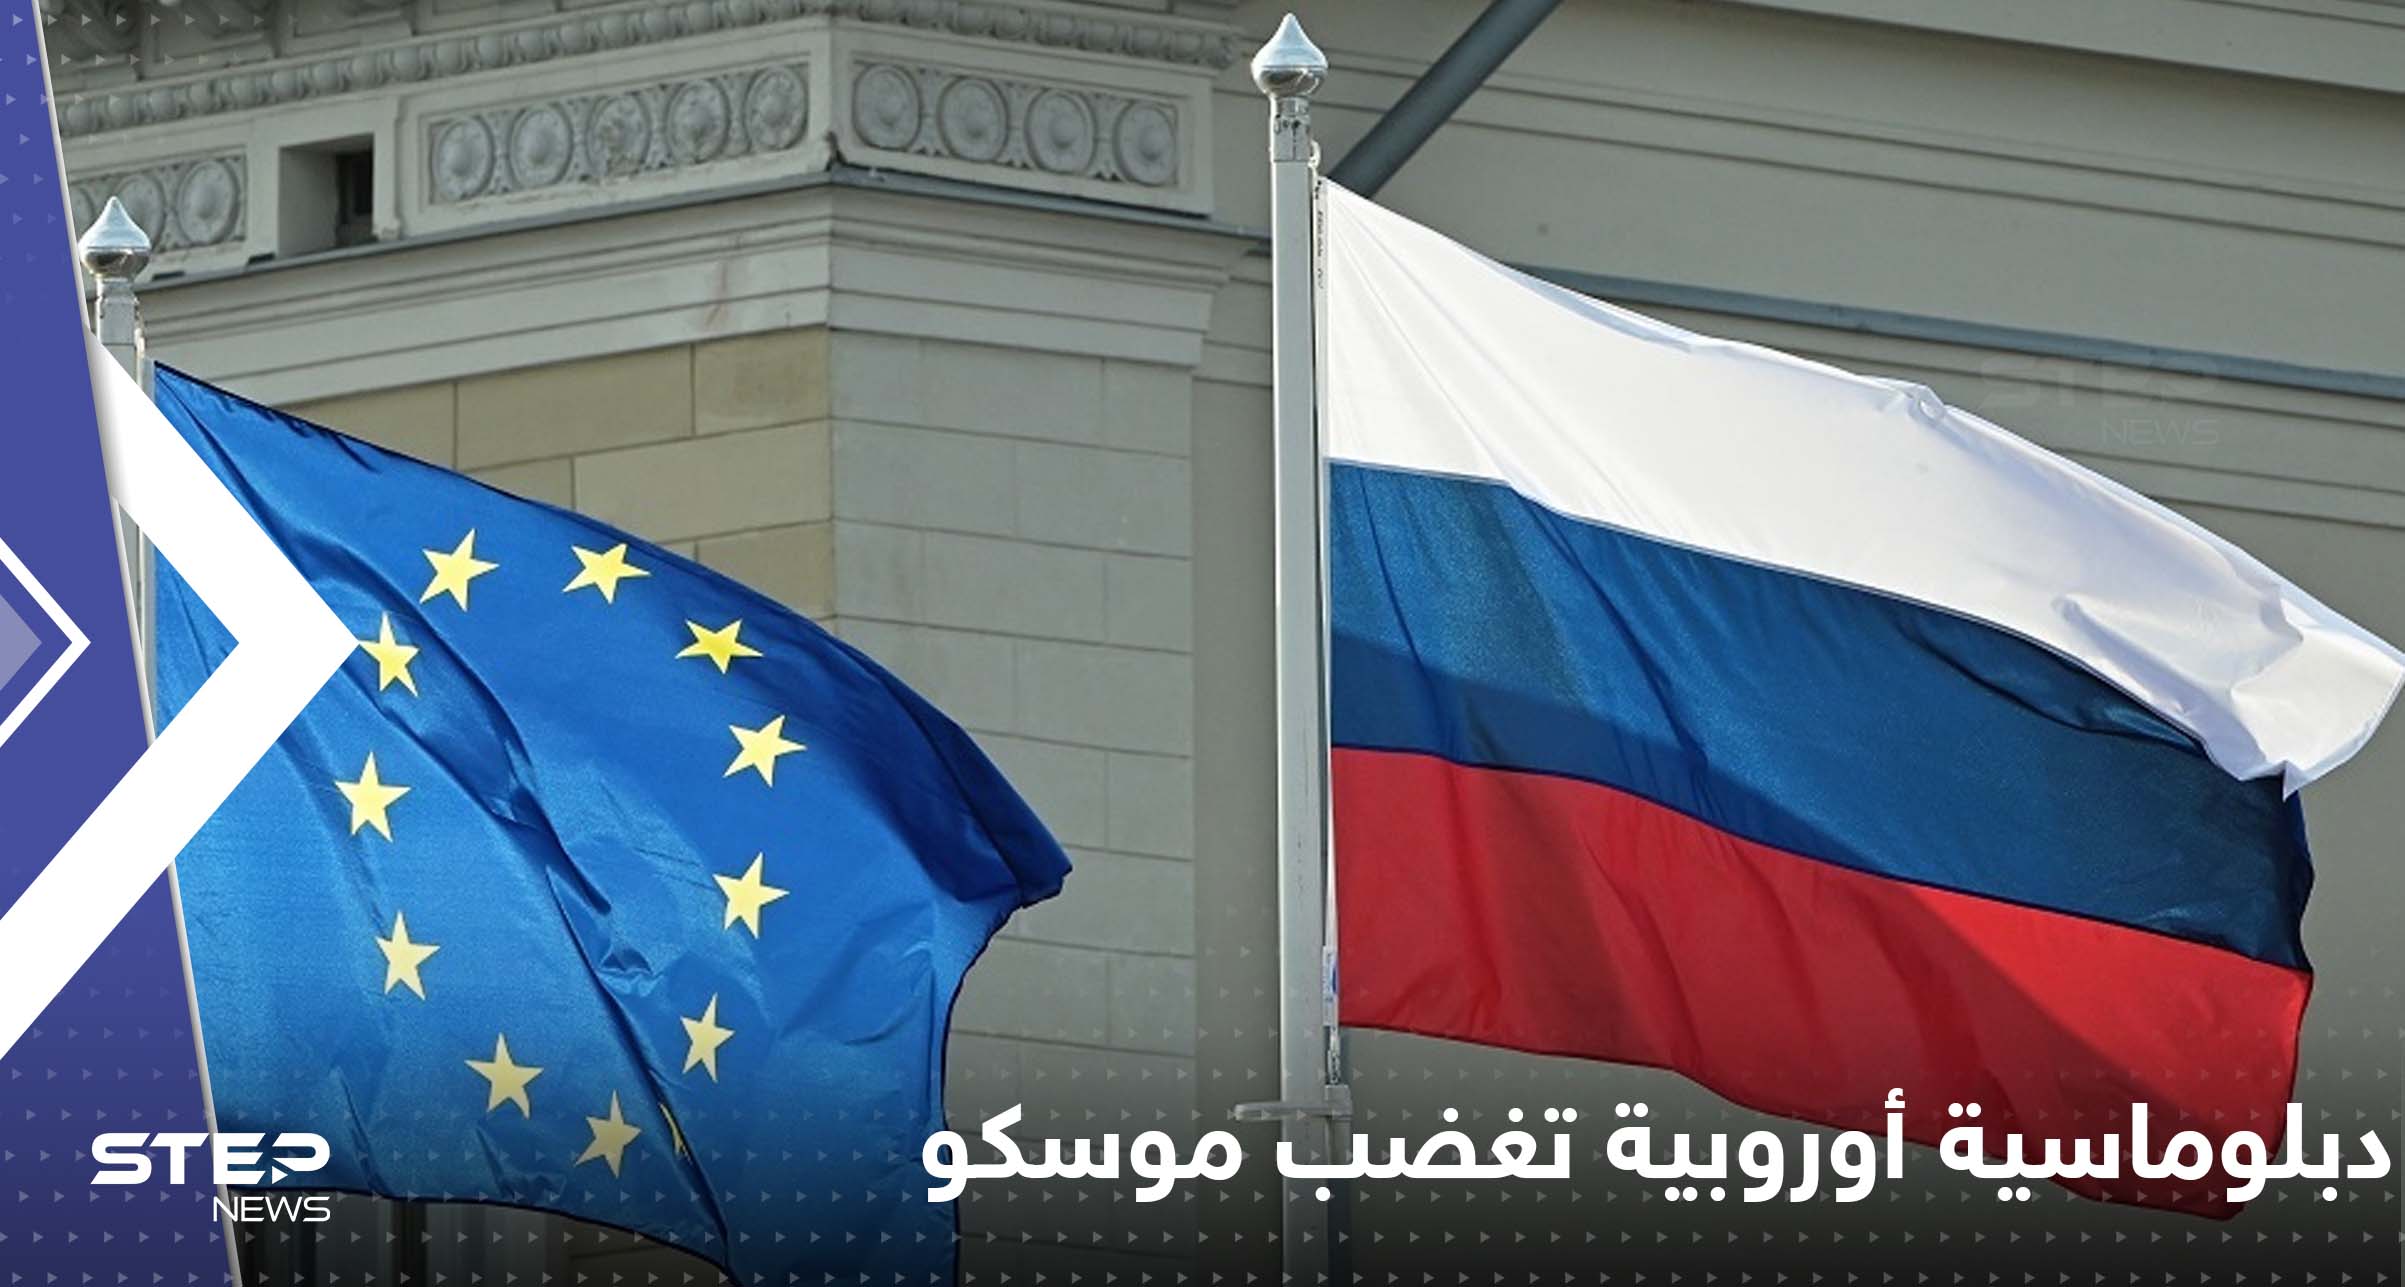 دبلوماسية أوروبية تغضب موسكو